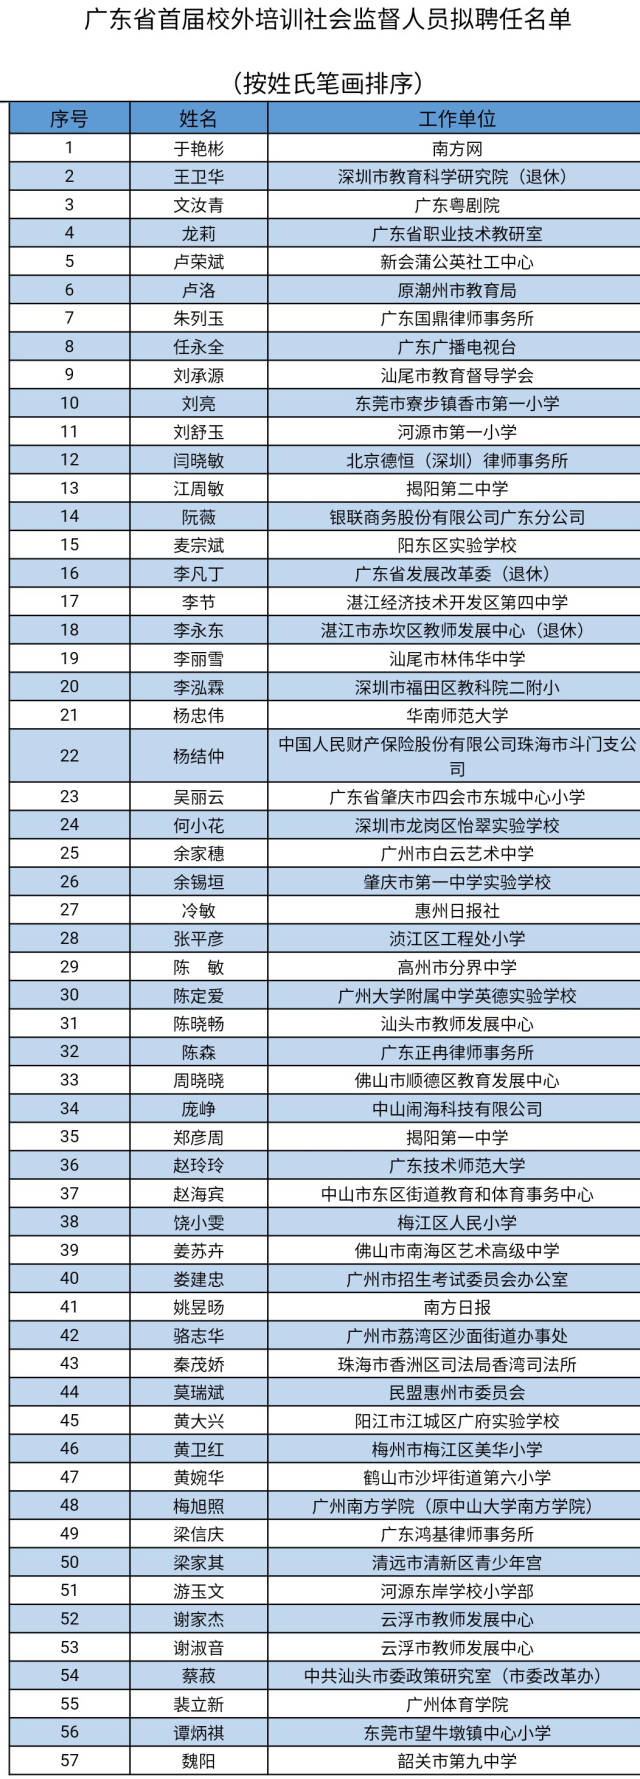 广东省首届校外培训社会监督人员拟聘任名单